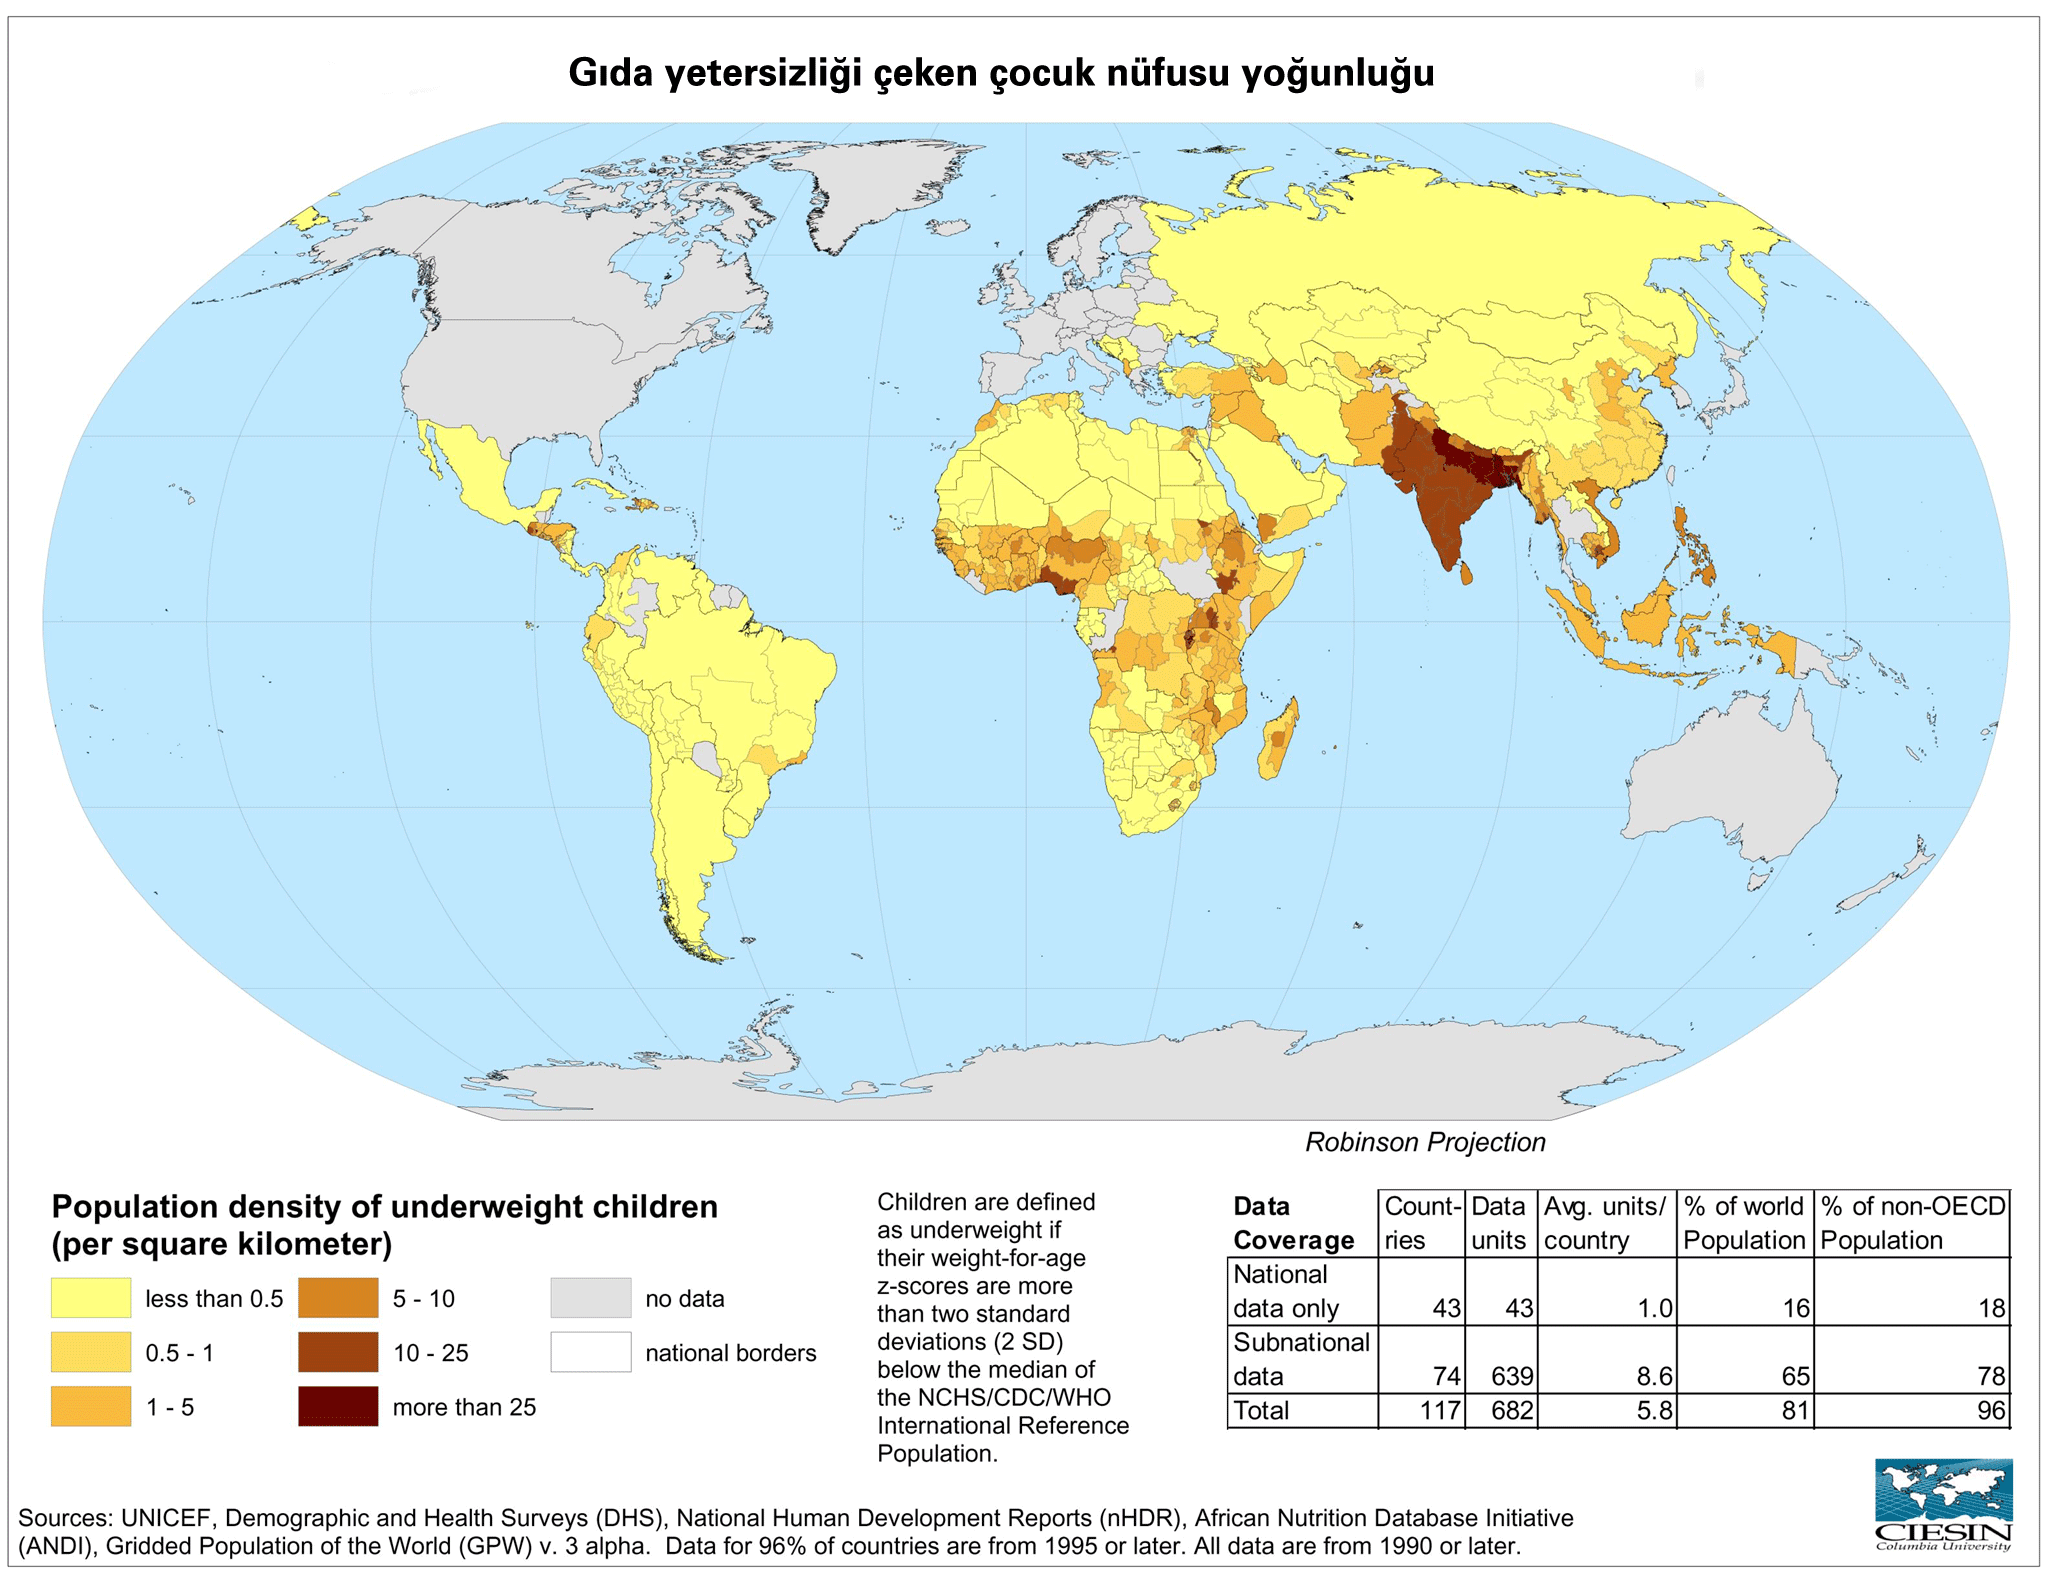 Dünya Gıda Yetersizliği Haritası